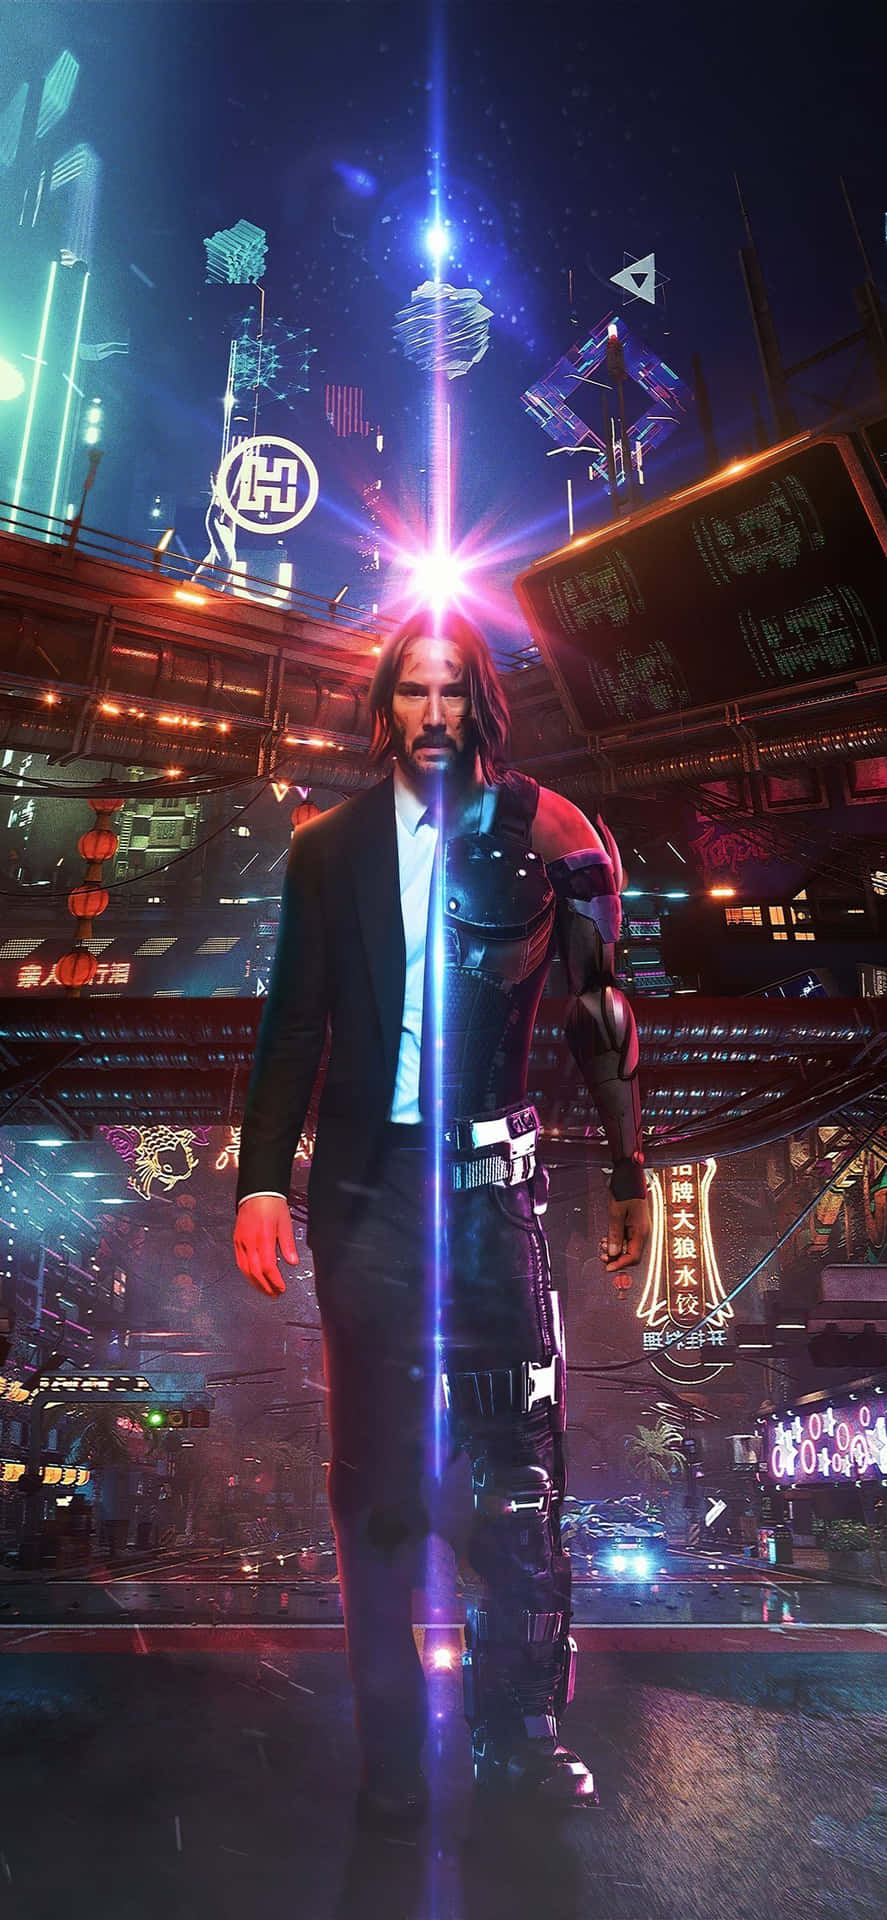 Fondode Pantalla De Keanu Reeves En Cyberpunk 2077 Para Iphone Xs Max.